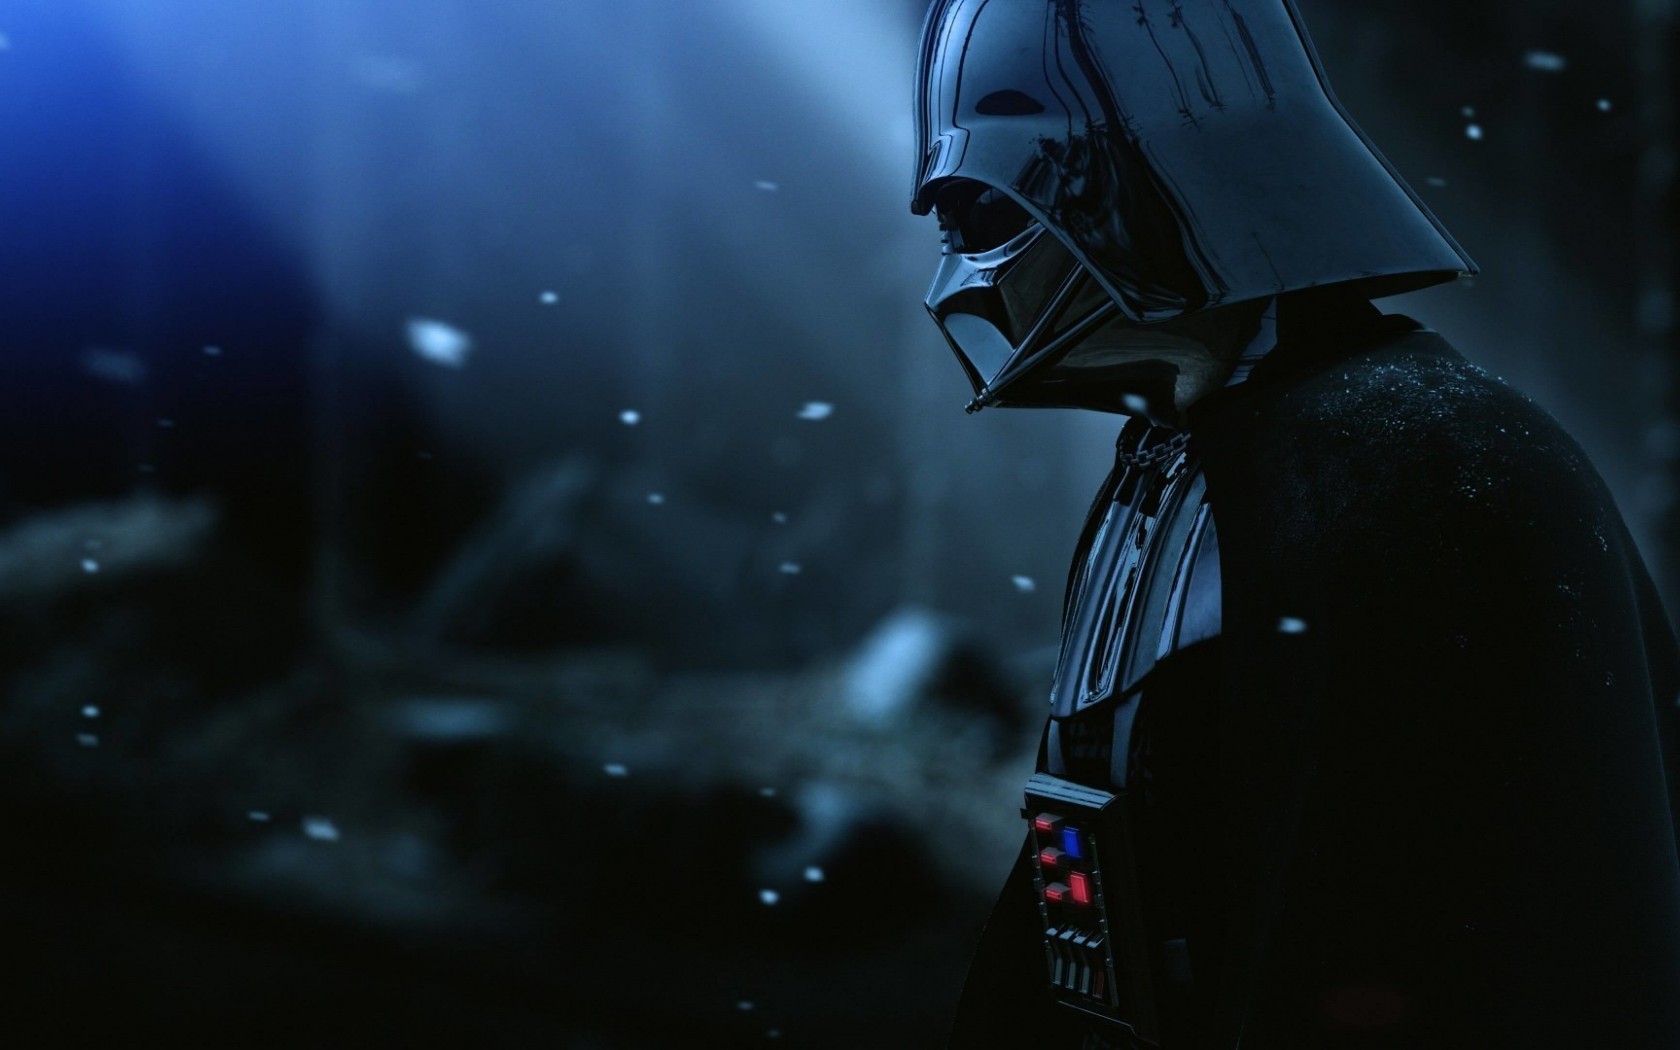 Darth Vader - The Force Unleashed 2 Wallpaper for Desktop 1680x1050